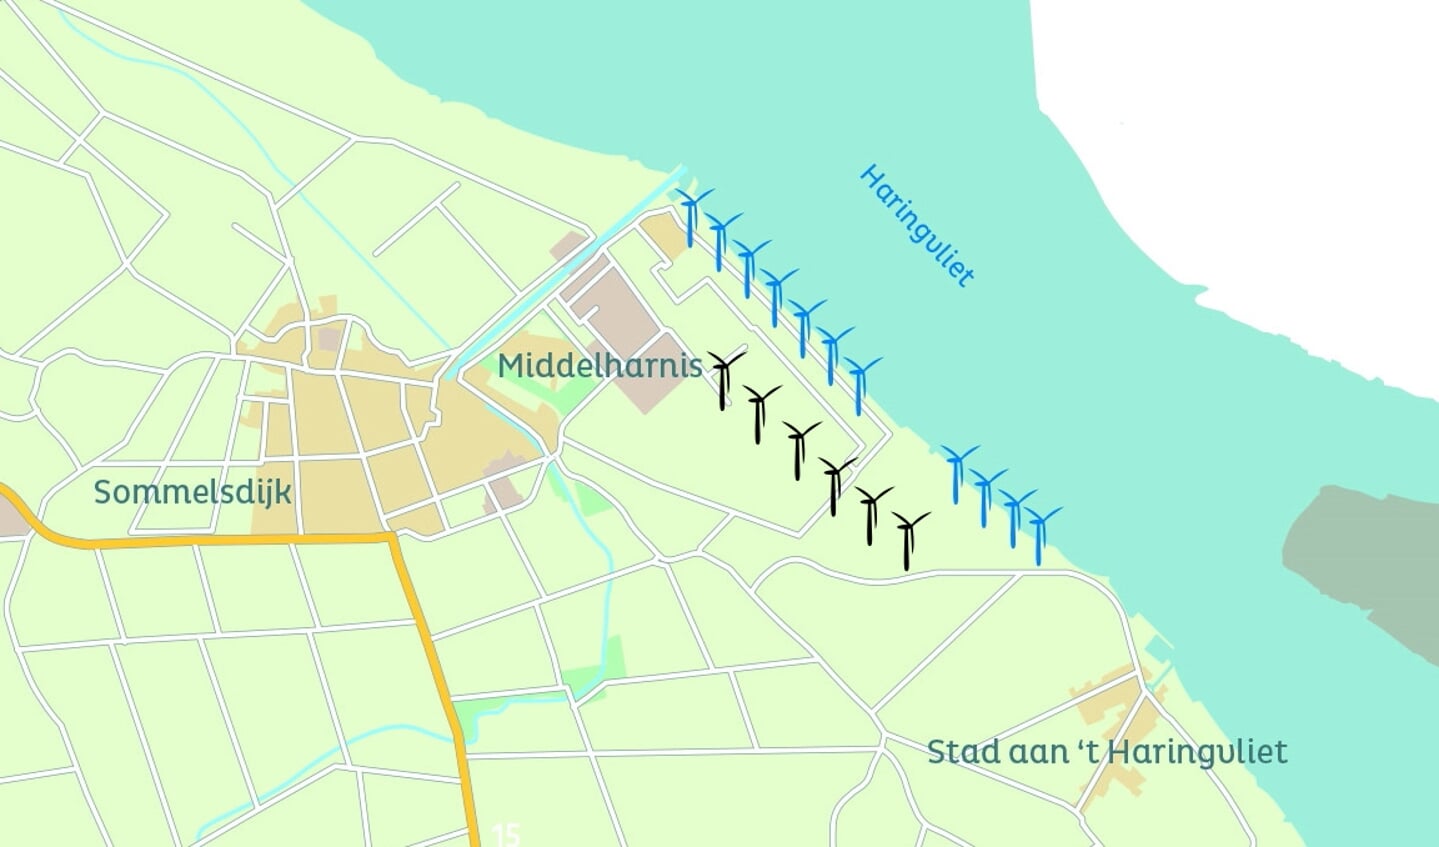 Kaart met in het blauw de bestaande windmolens langs het Haringvliet en in het zwart de zes nieuwe windmolens. Tussen de nieuwe windmolens worden ze zonnepanelen en batterijen geplaatst.